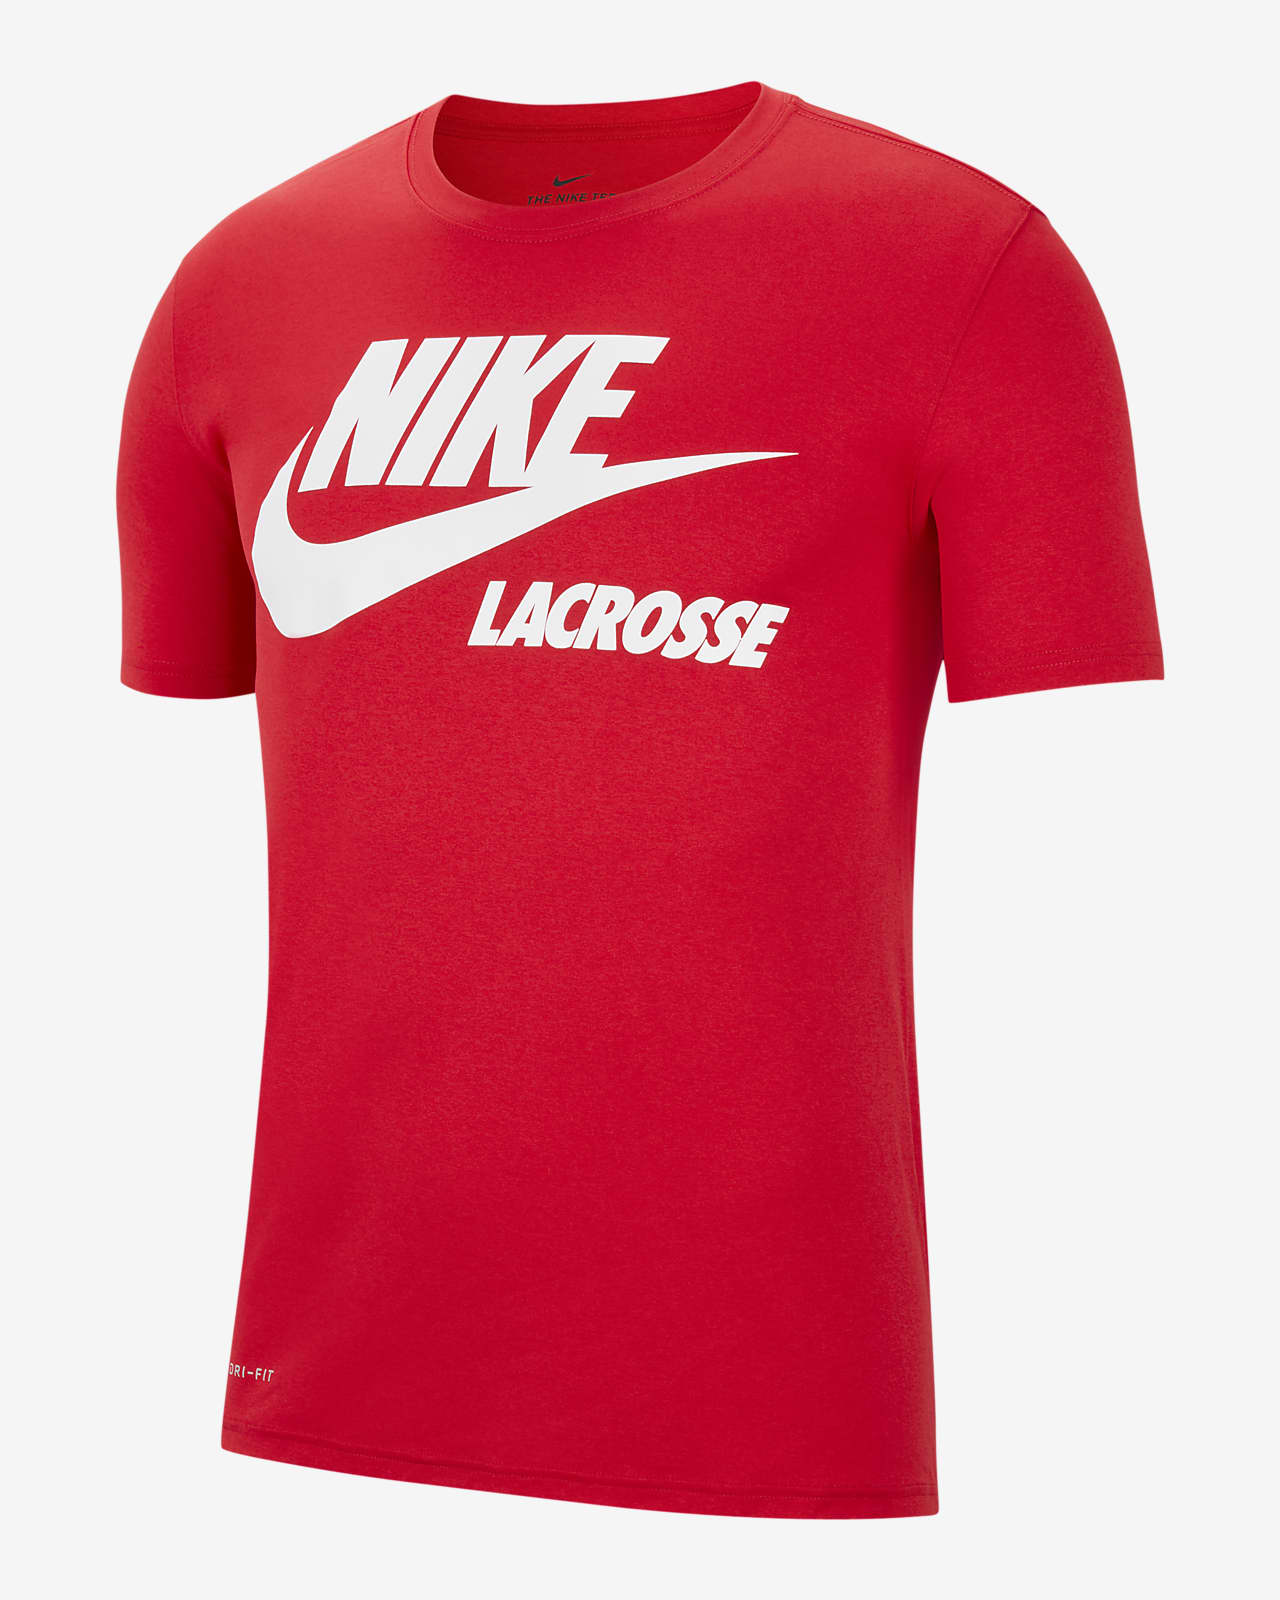 Nike Dri-FIT Men's Lacrosse T-Shirt